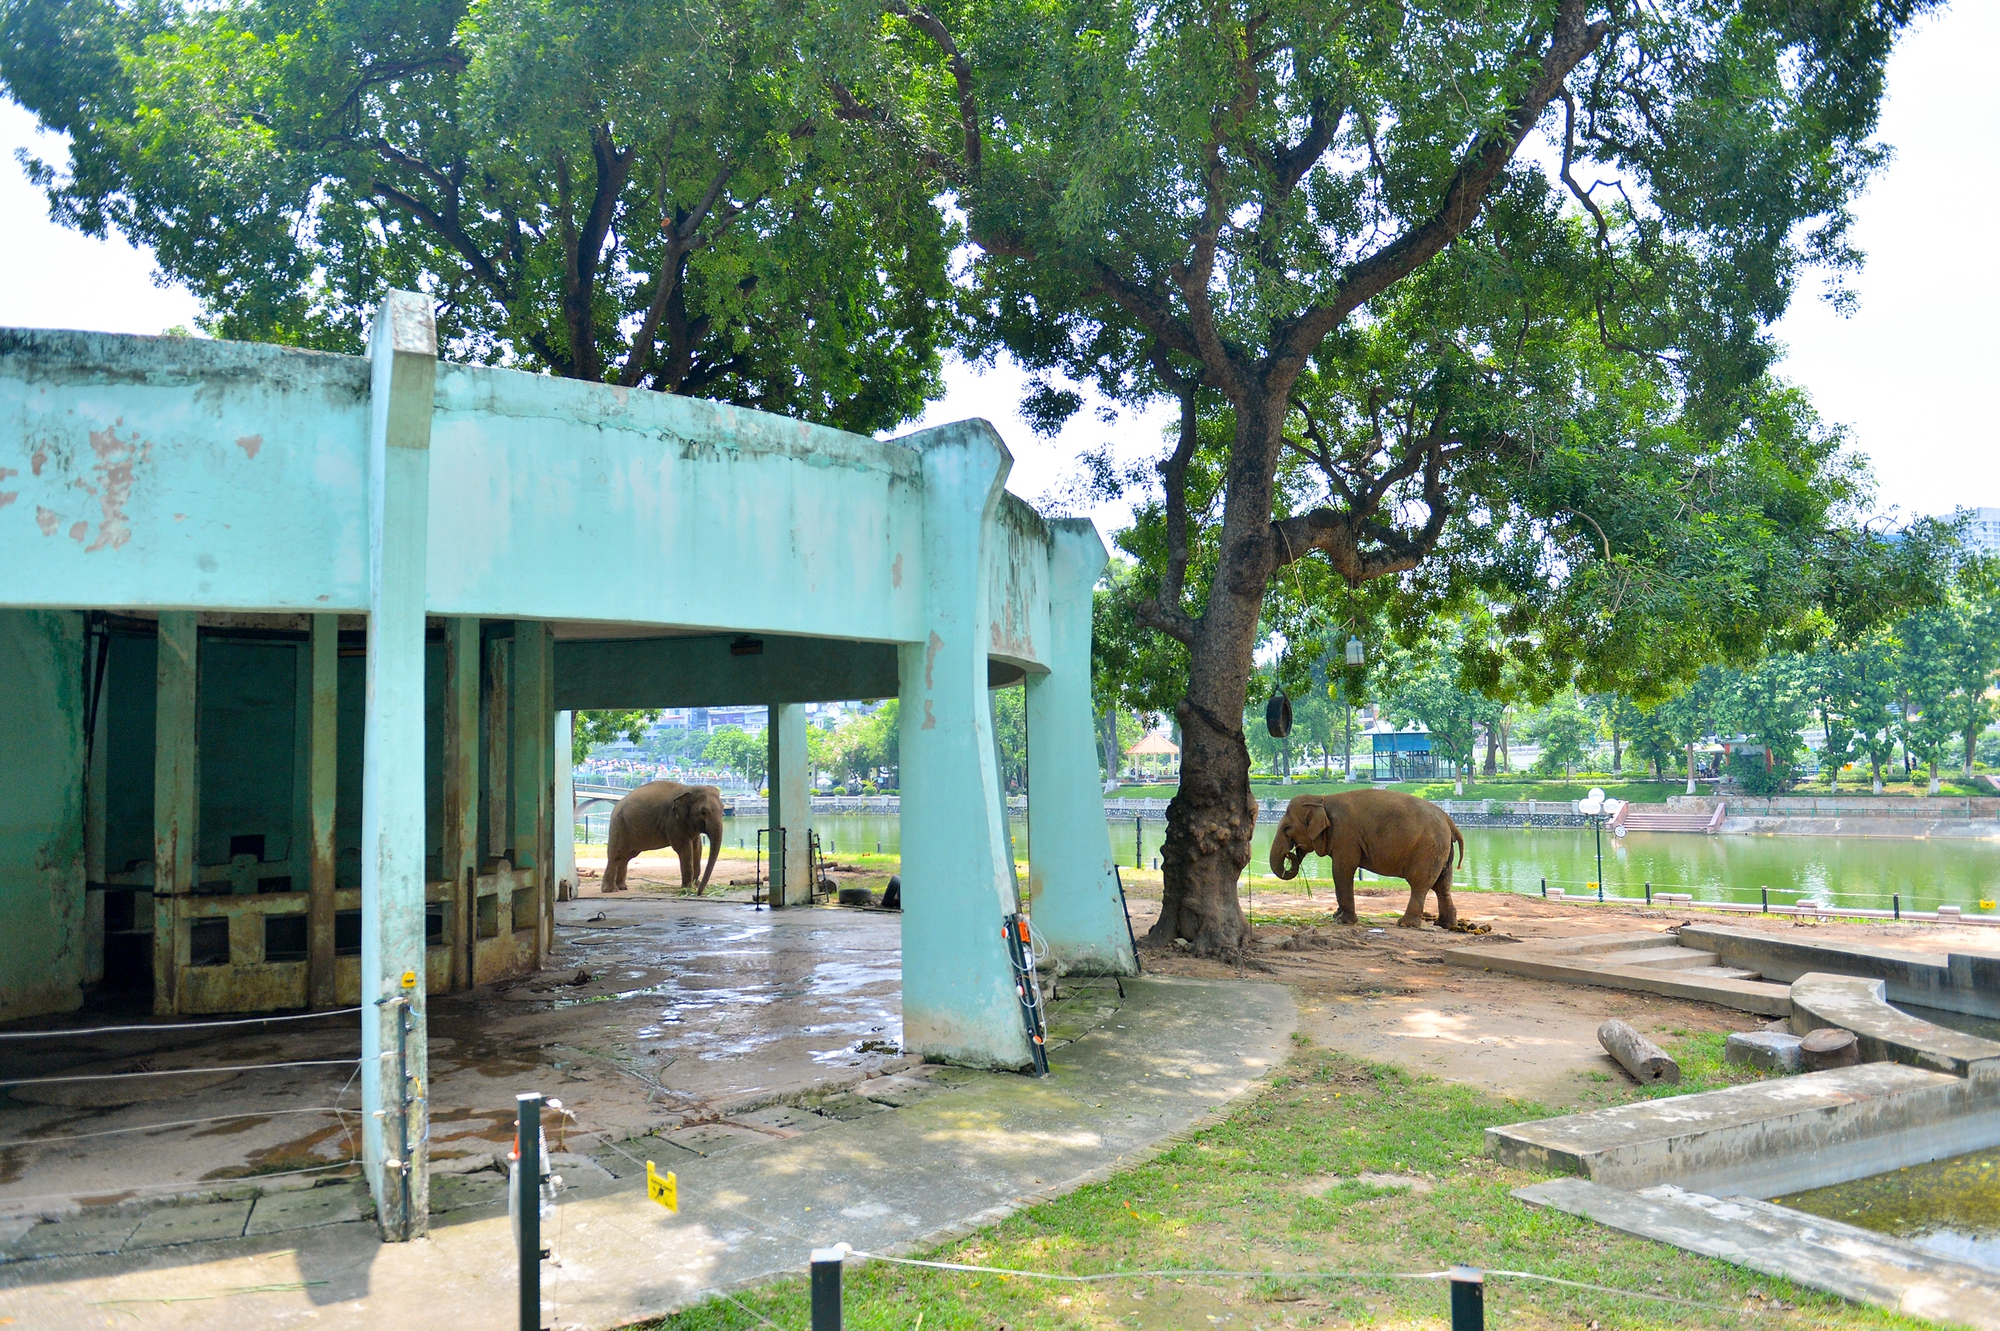 Quản tượng 24 năm tại vườn thú Hà Nội: 'Chúng tôi coi voi như con của mình' - Ảnh 1.